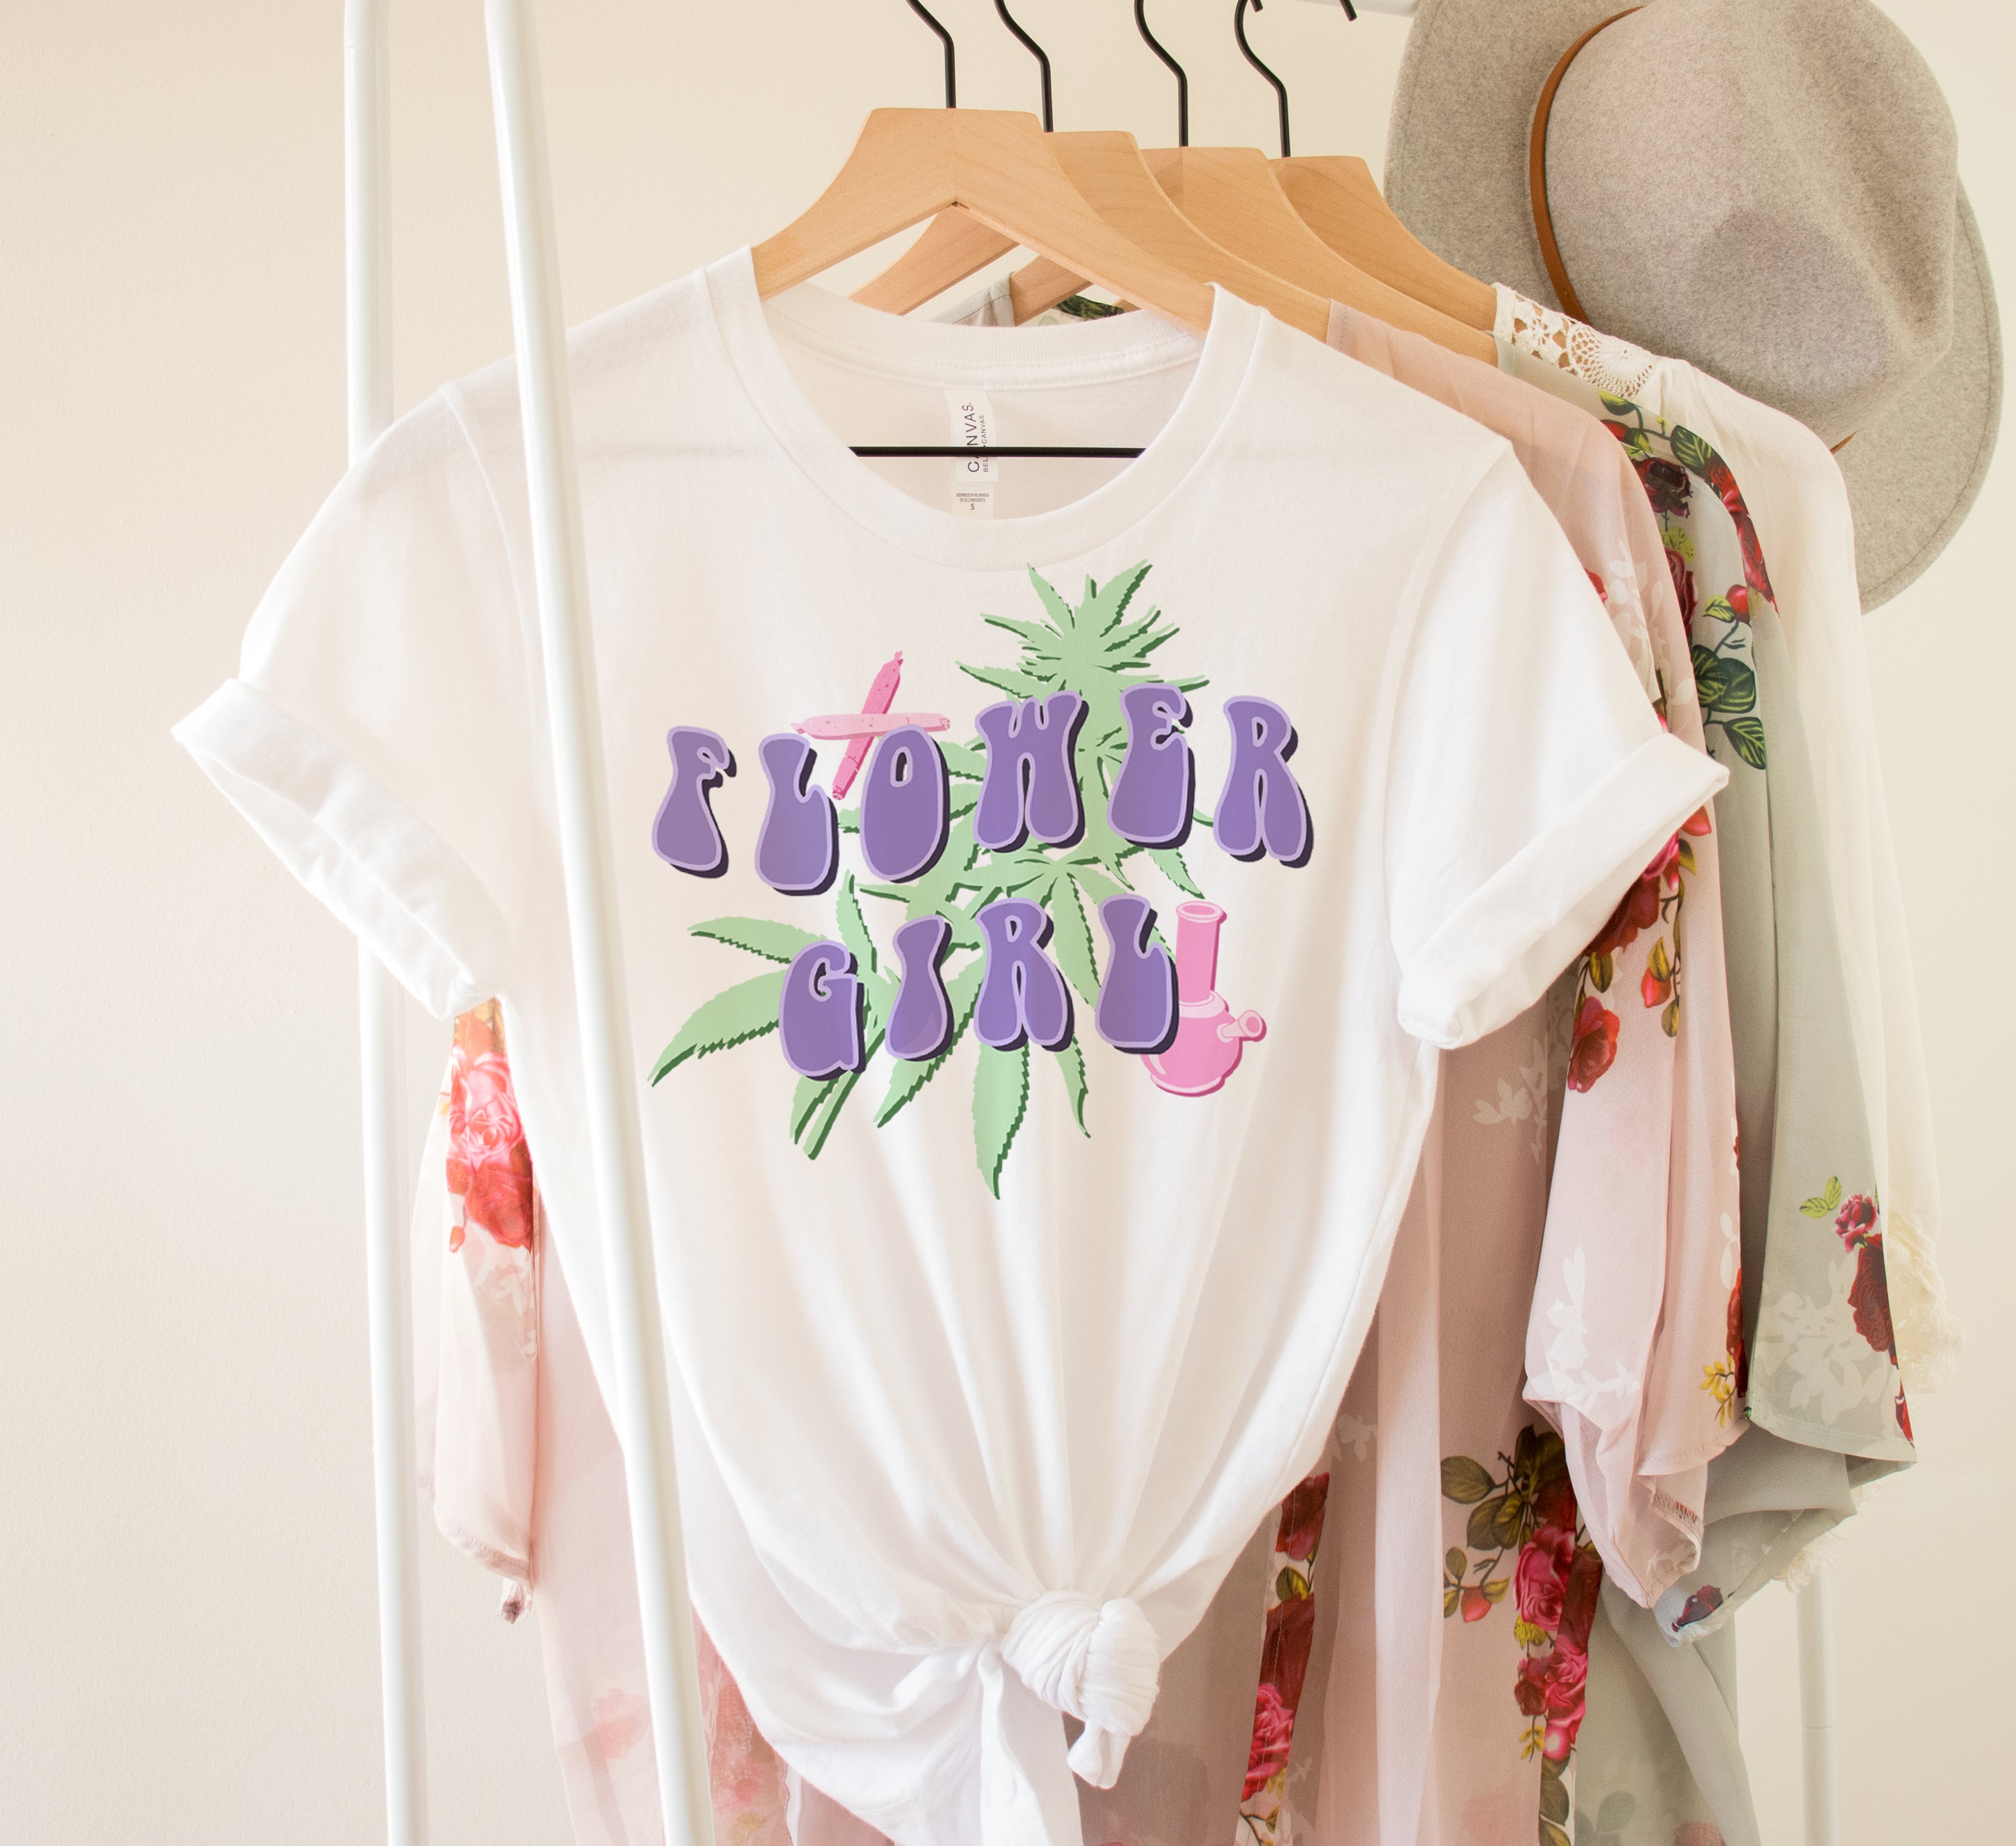 cute stoner shirt - HighCiti